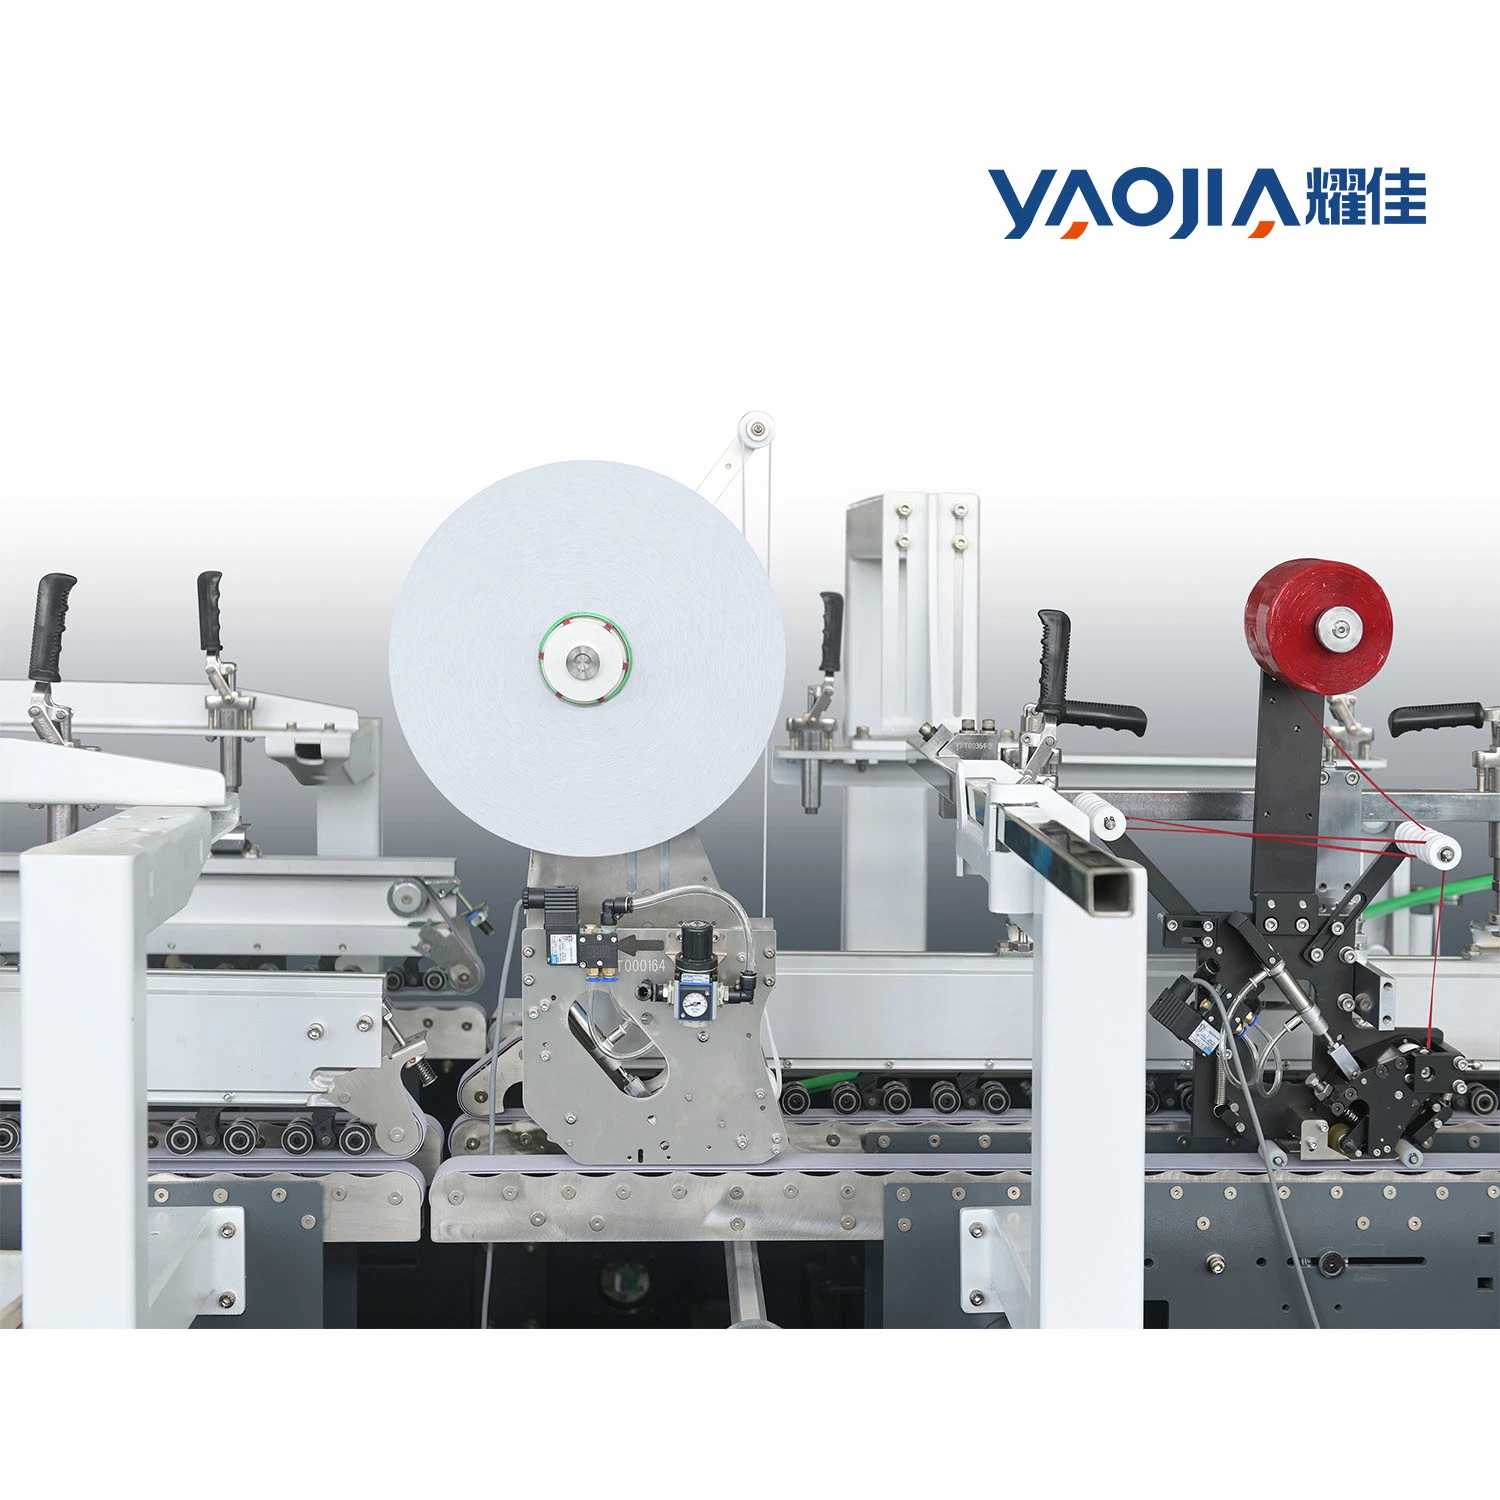 Pallets Electric Yaojia China Corrugated Folder Gluer Paper Box Making Machine Hot Sale